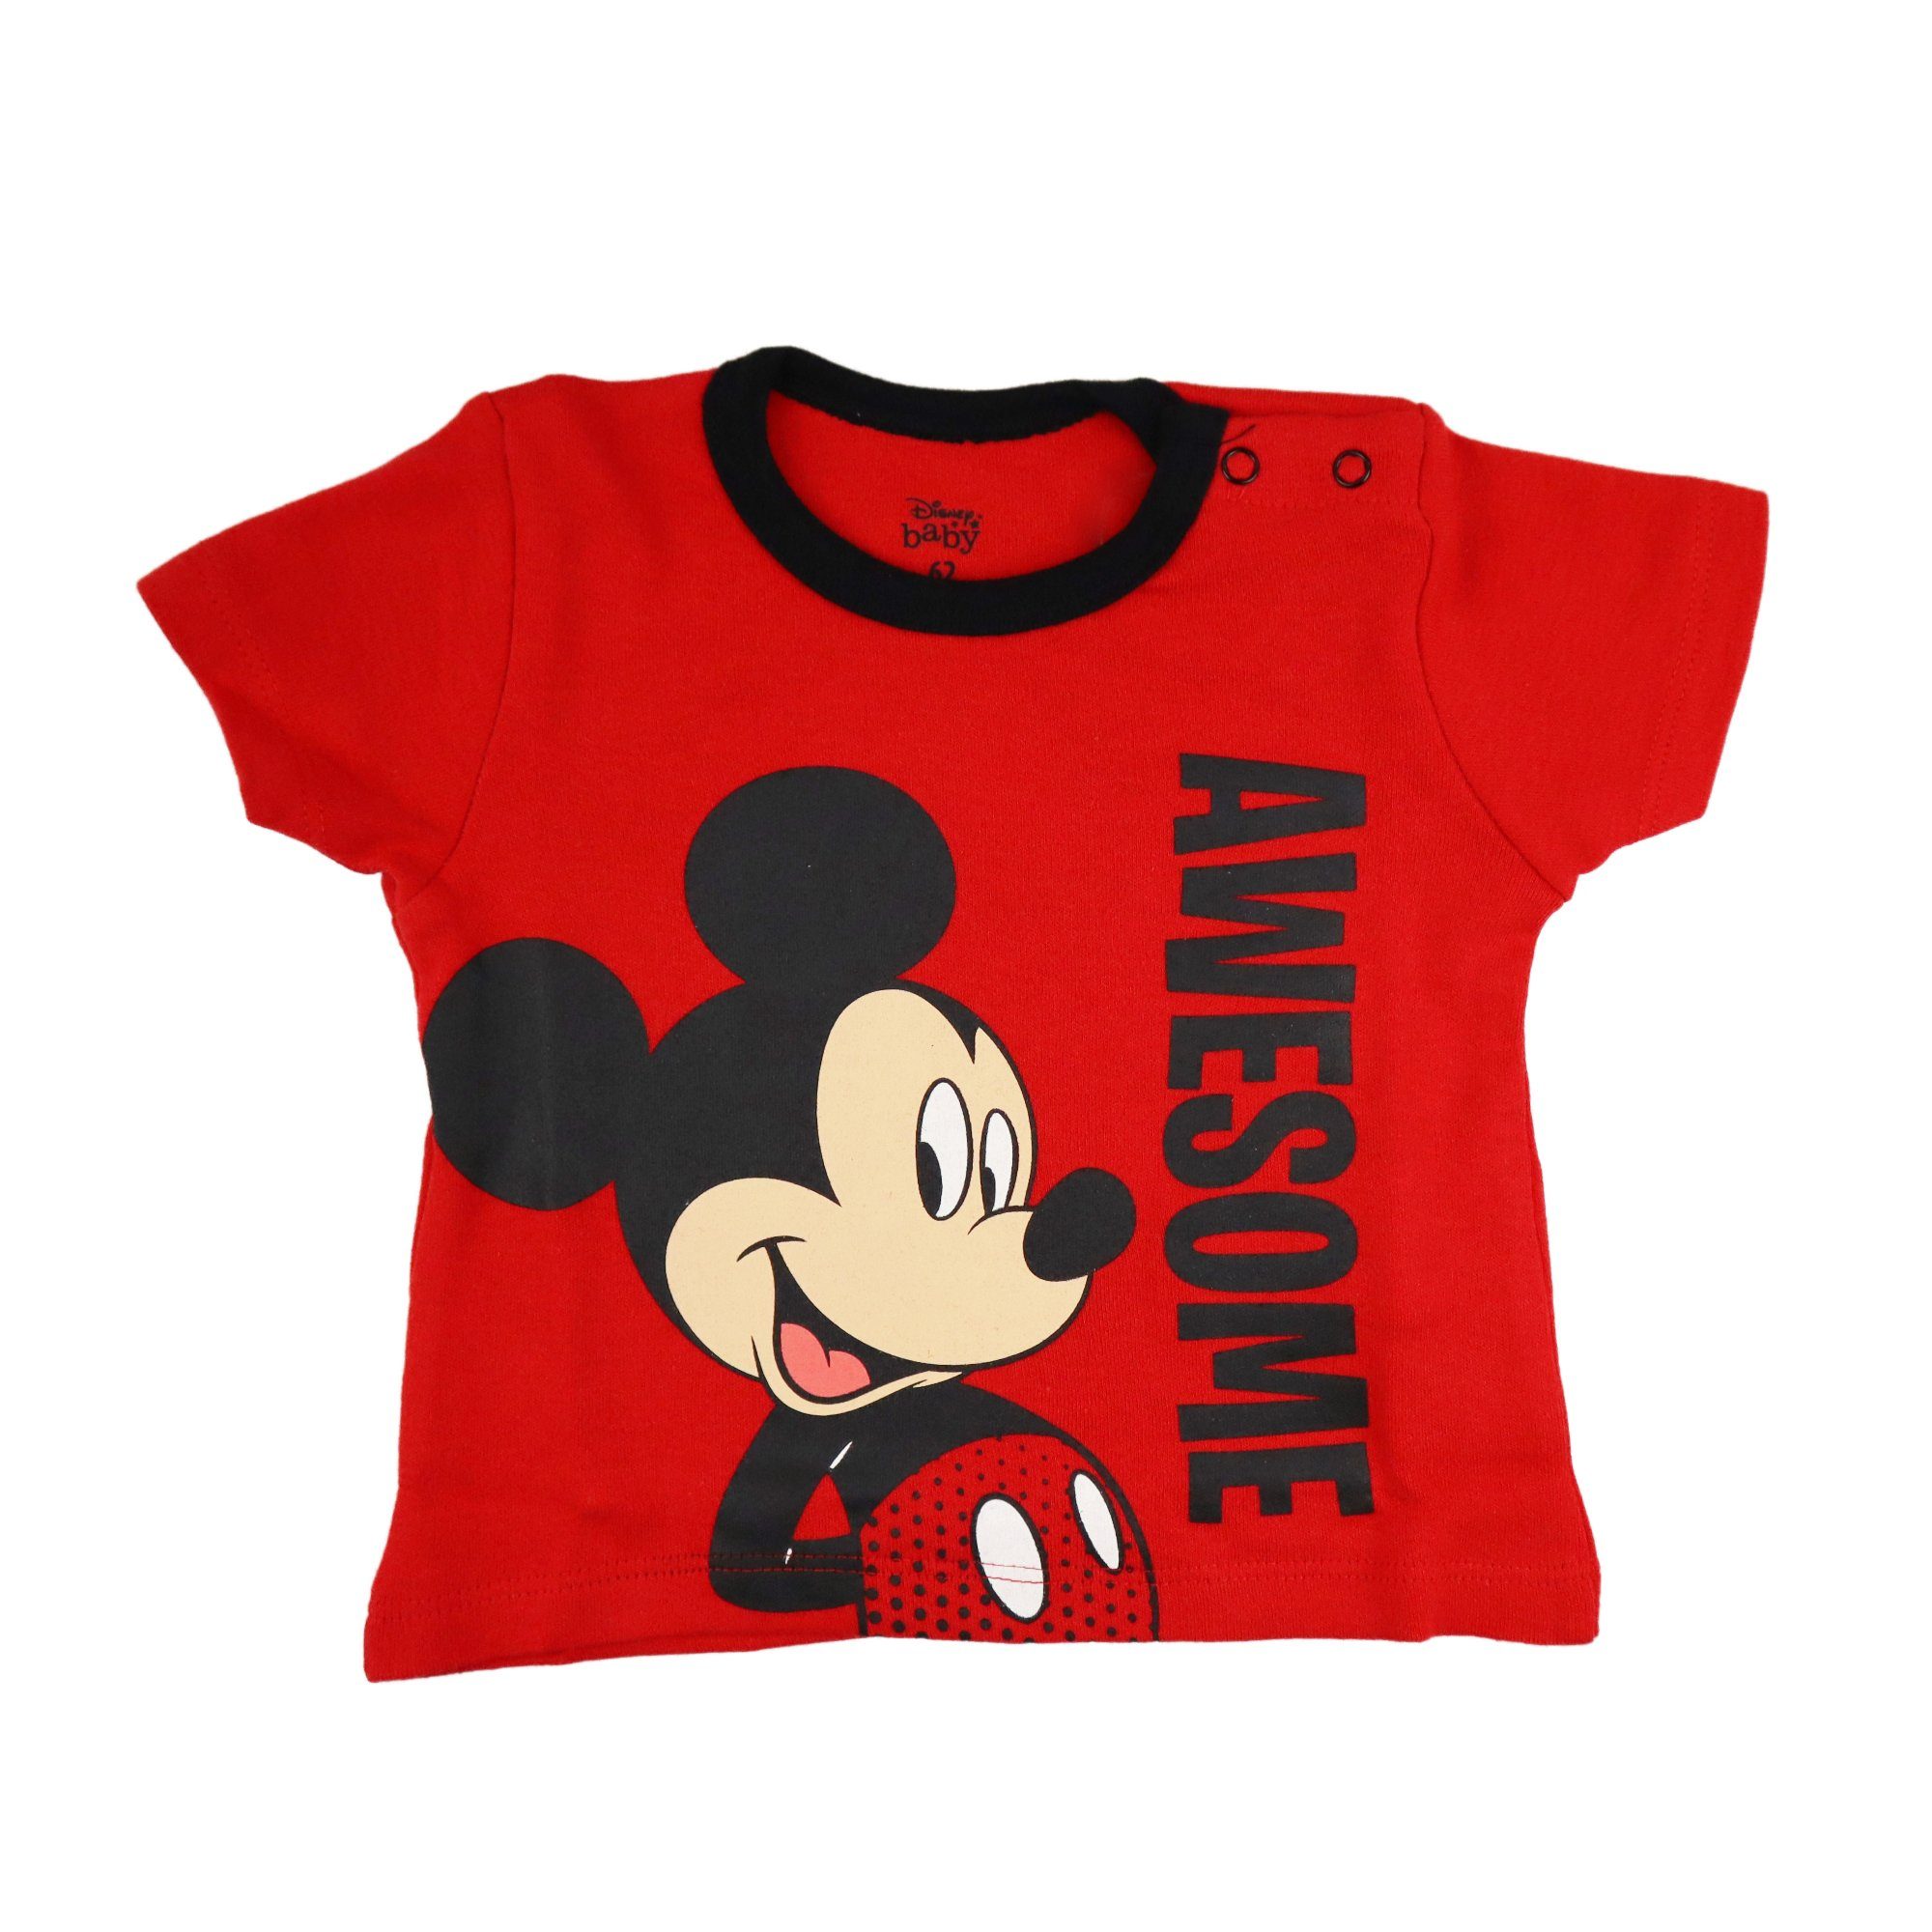 Disney Mickey Mouse T-Shirt Baby Jungen kurzarm Shirt Gr. 62 bis 86, 100% Baumwolle, Rot oder Weiß